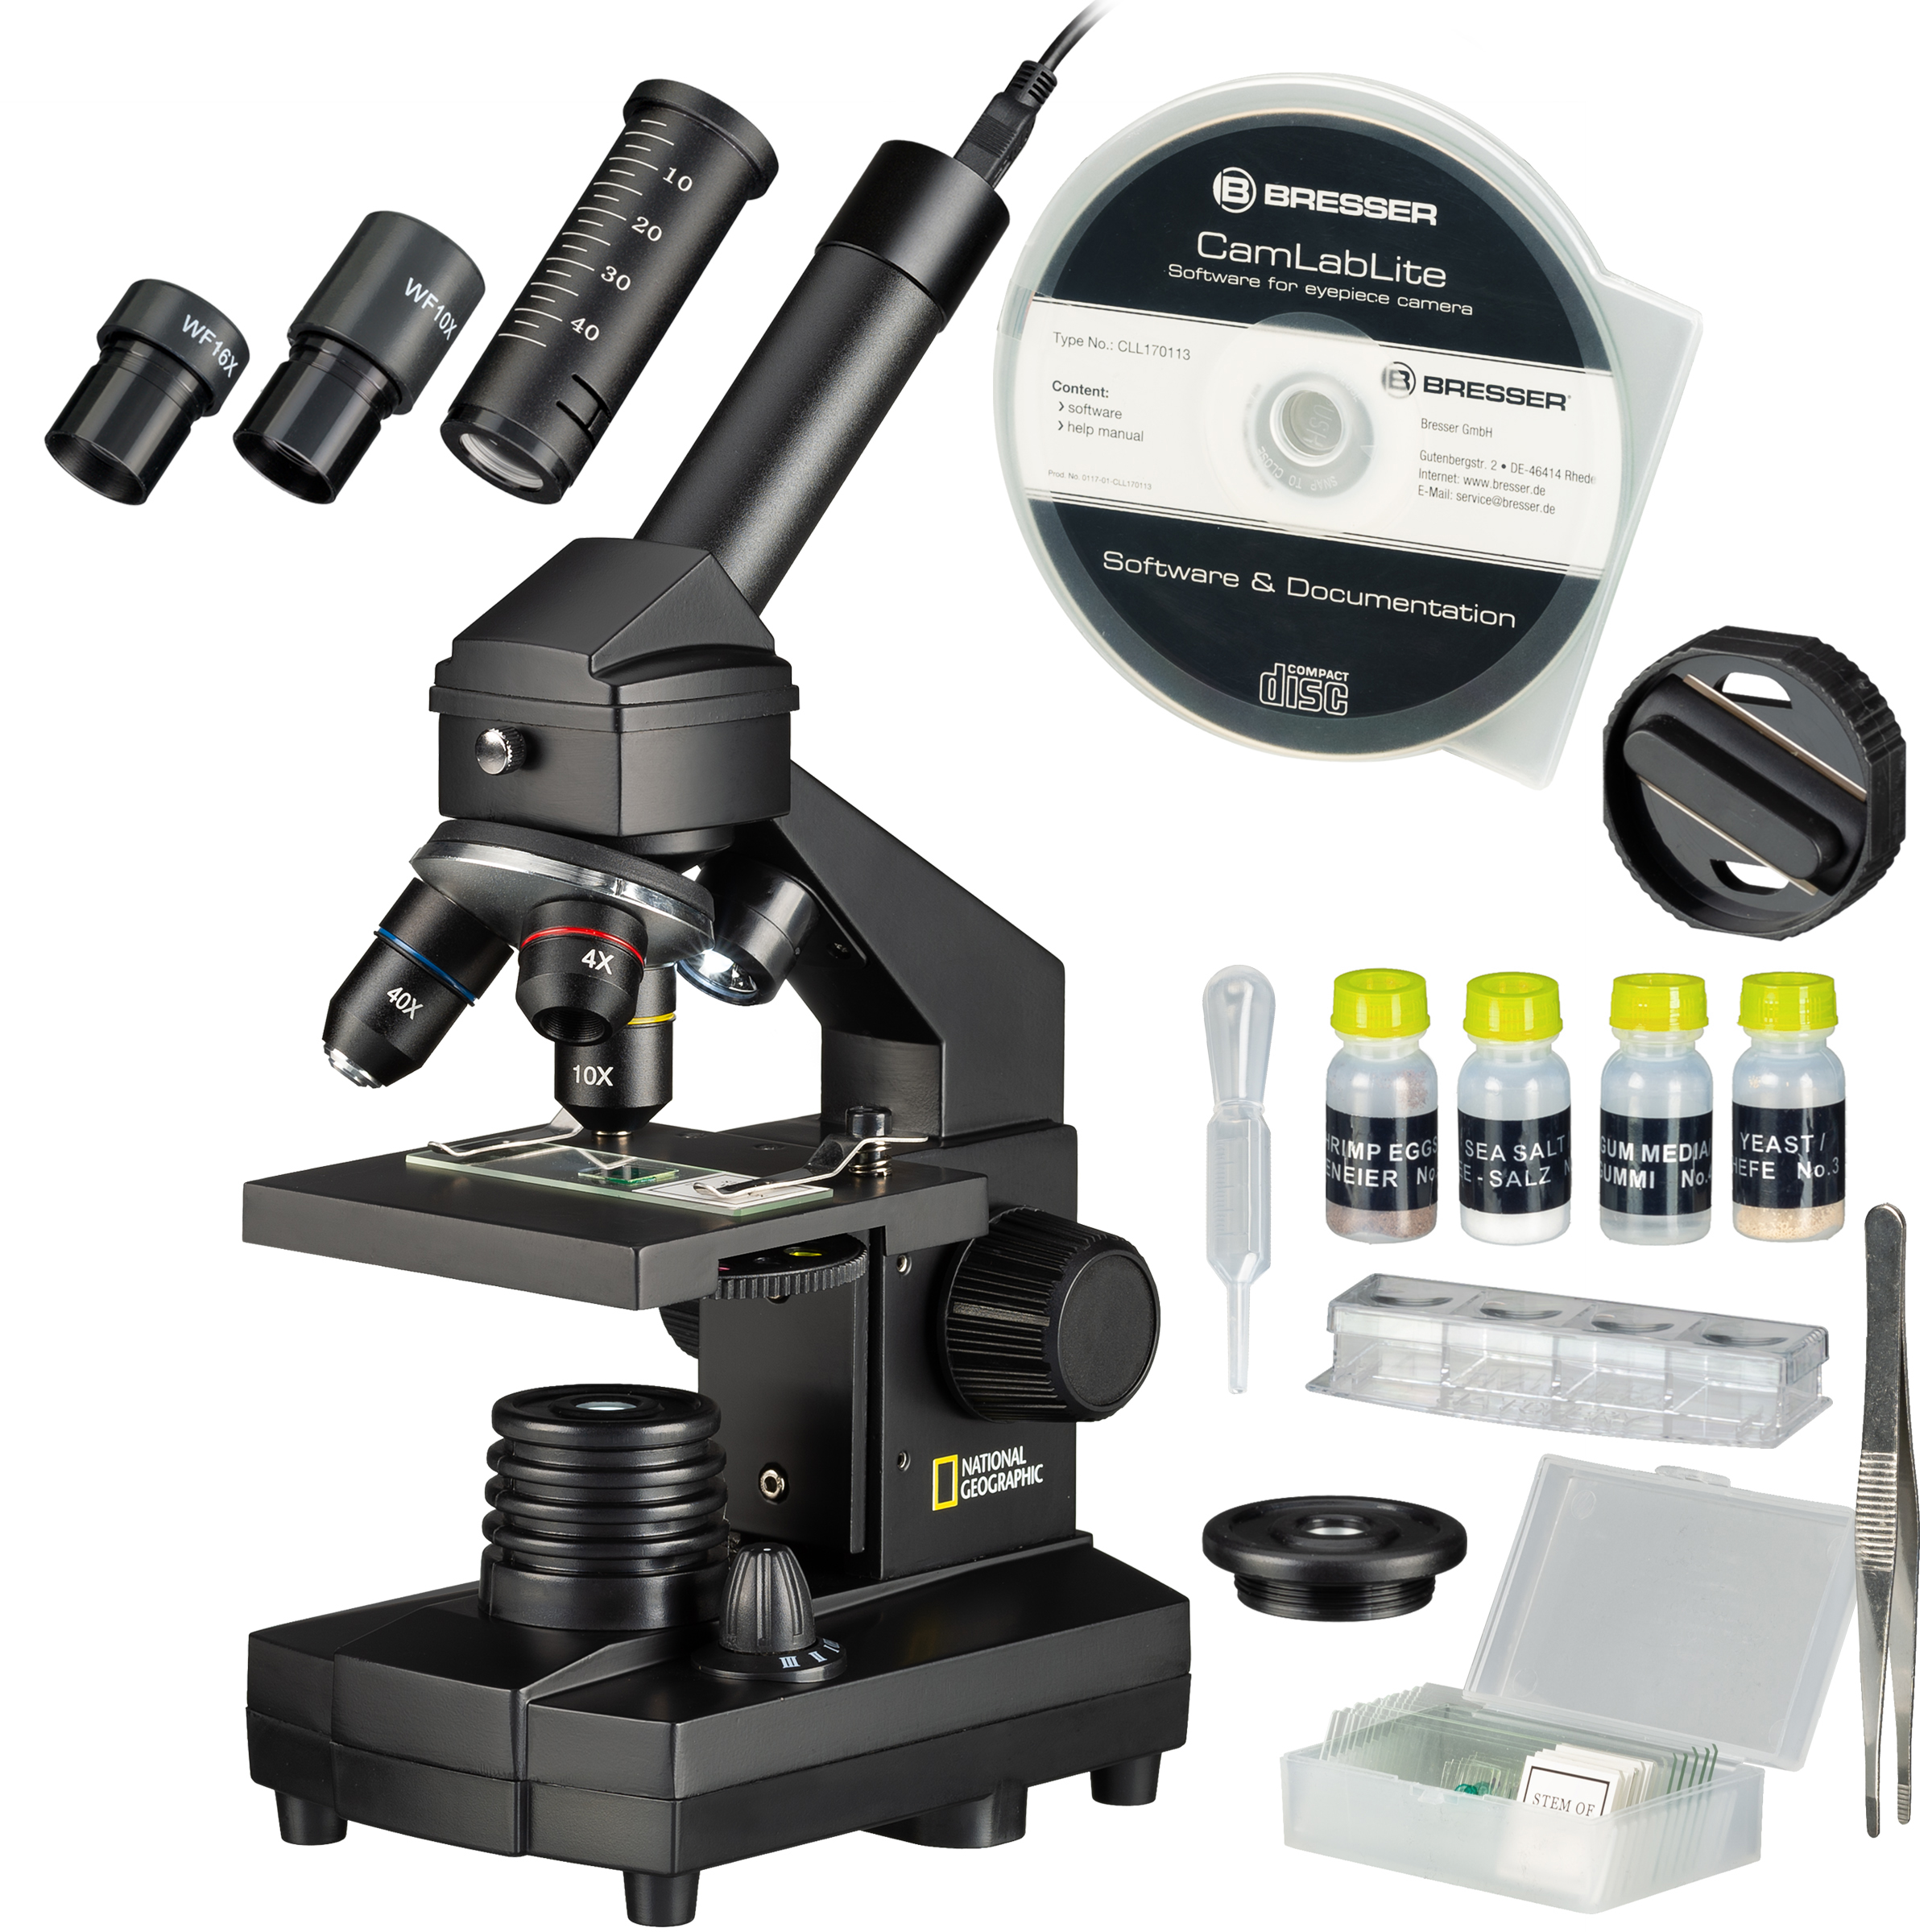 ​NATIONAL GEOGRAPHIC 40x-1024x Microscopio (maleta y ocular USB incluidos)